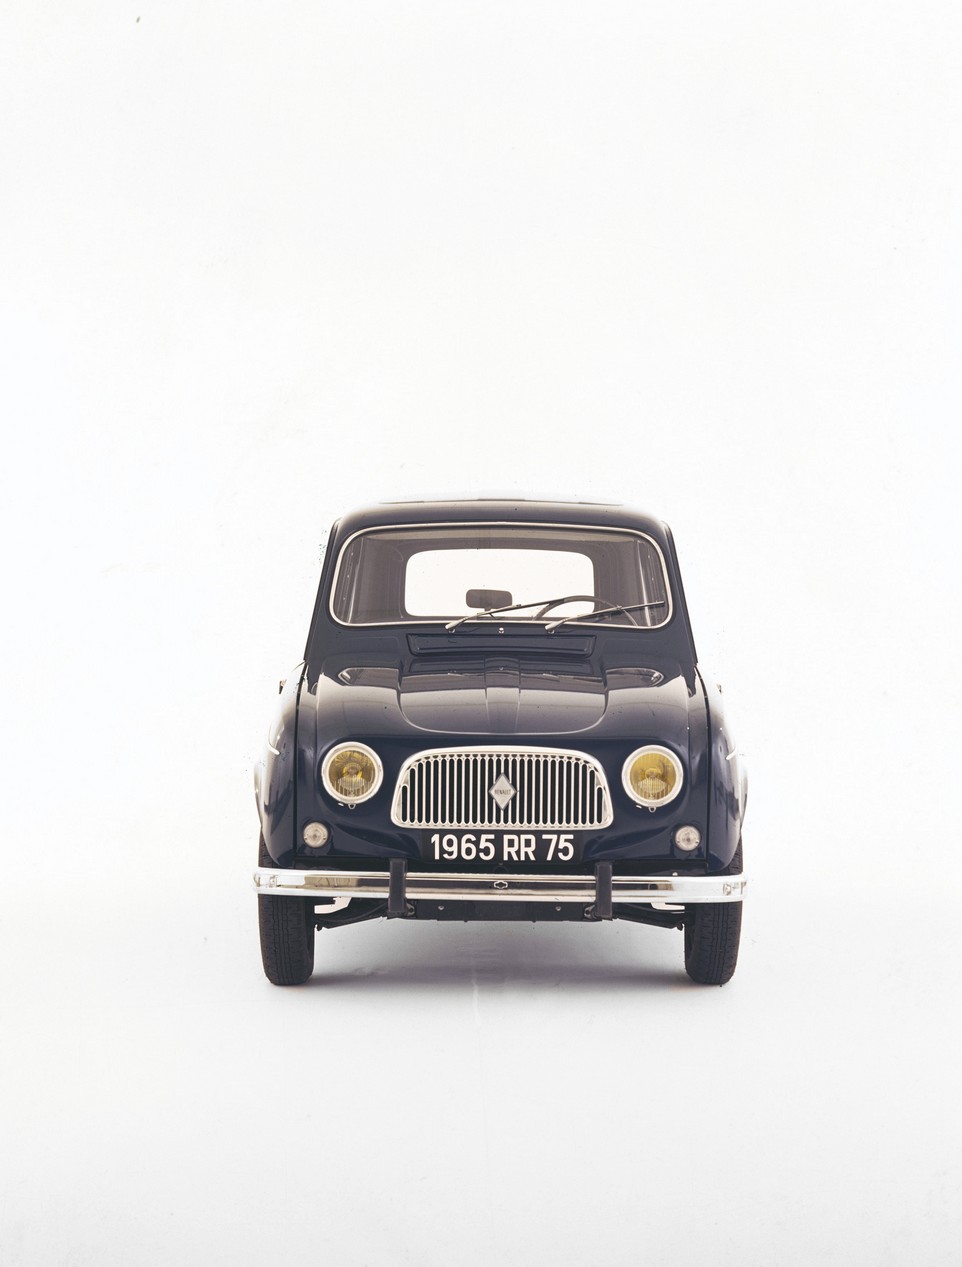 1964 Renault 4 1 - Vintage